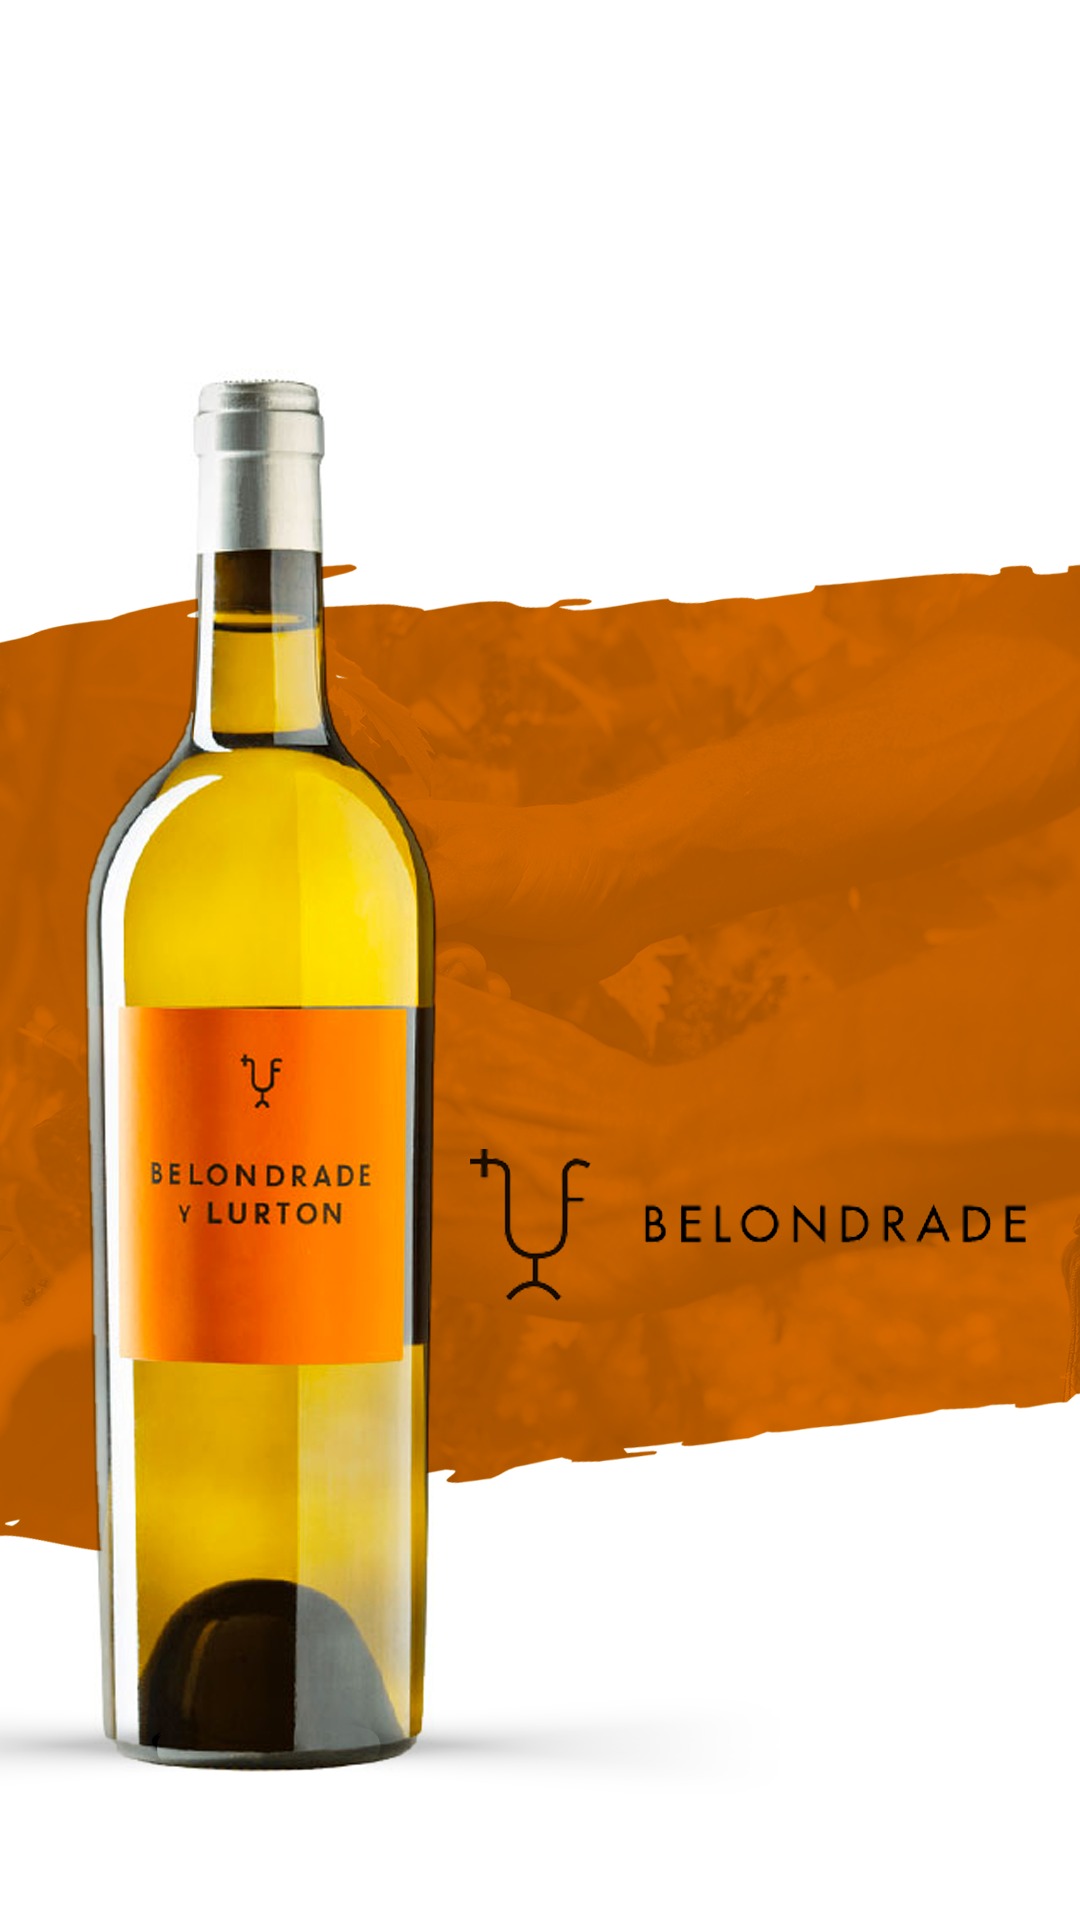 Ícone do mundo do vinho espanhol, Belondrade y Lurton chega à Vinha